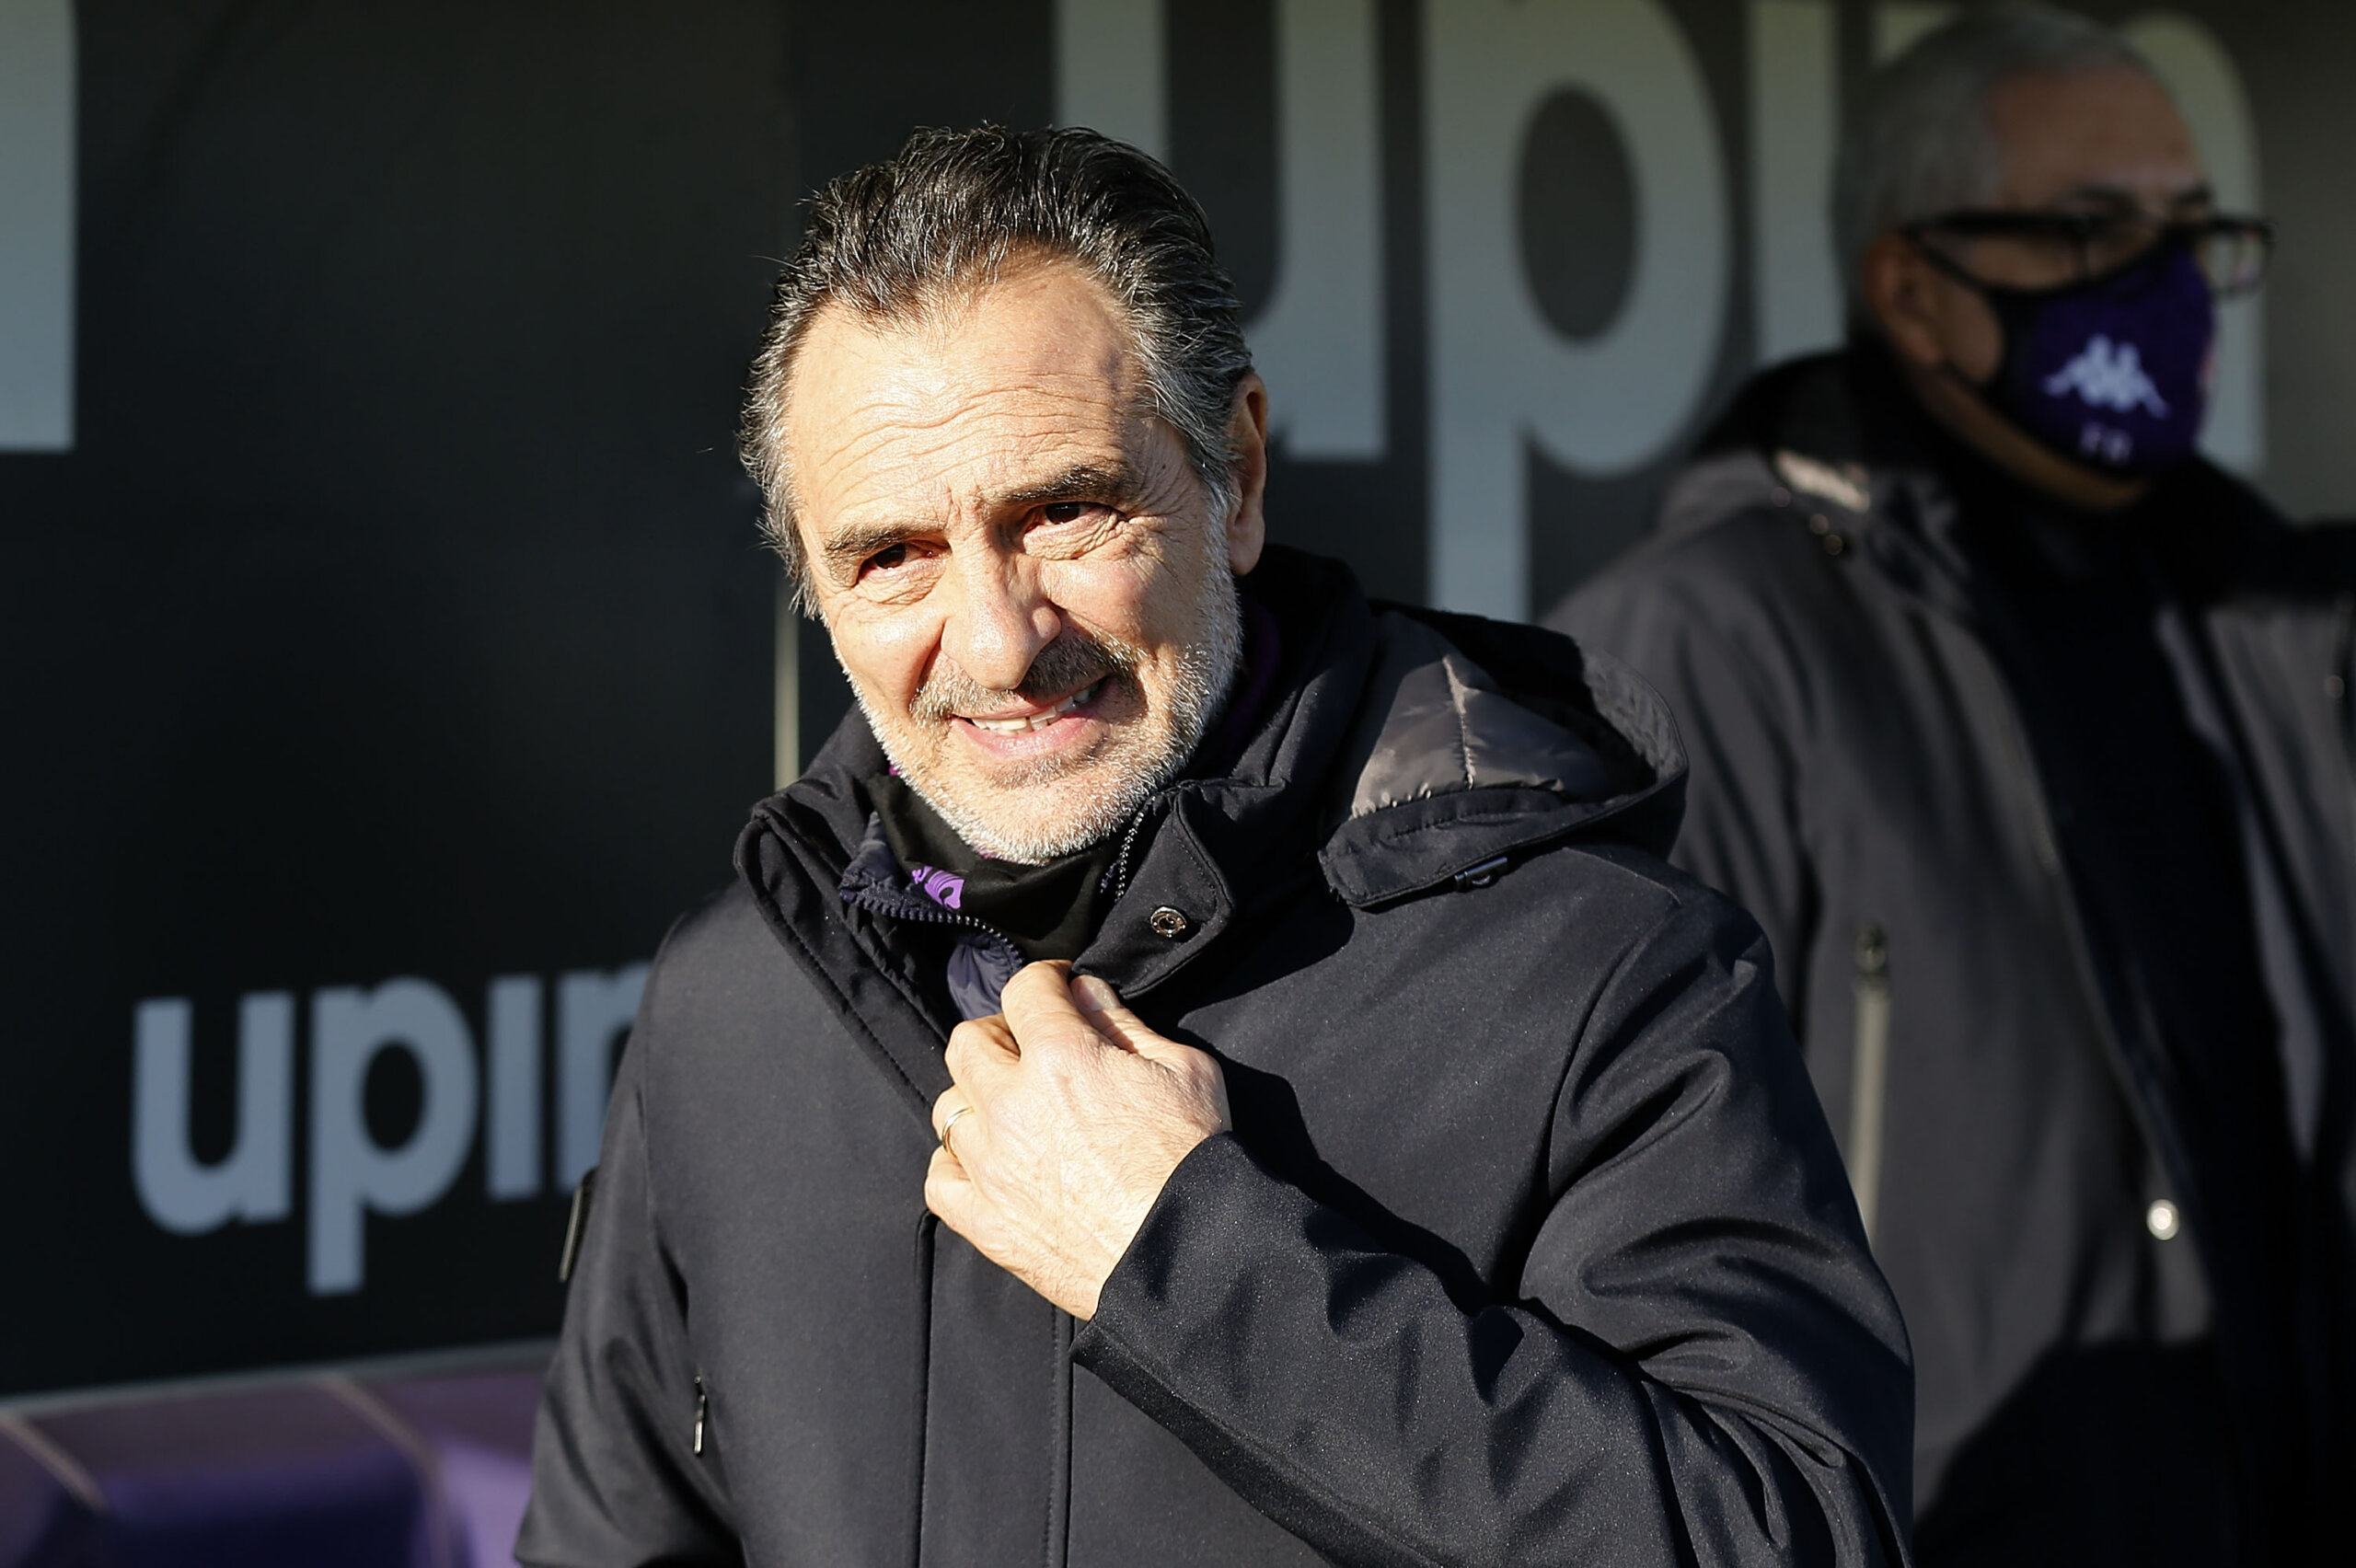 Sciarpa ufficiale per Milan Napoli: la reazione dei tifosi è